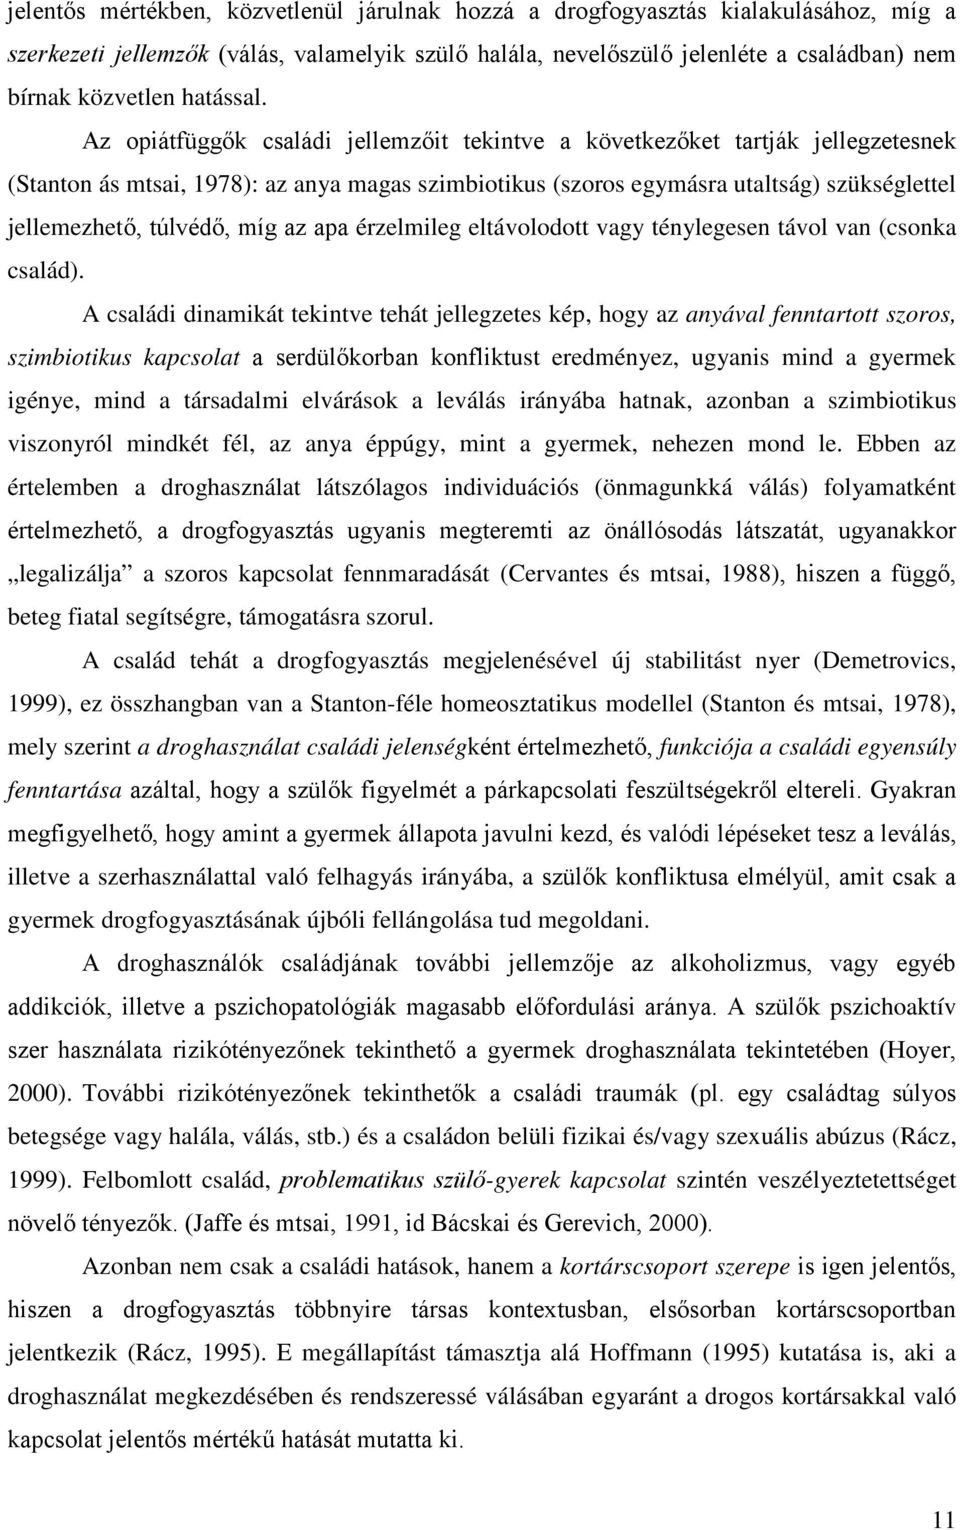 Az opiátfüggők családi jellemzőit tekintve a következőket tartják jellegzetesnek (Stanton ás mtsai, 1978): az anya magas szimbiotikus (szoros egymásra utaltság) szükséglettel jellemezhető, túlvédő,